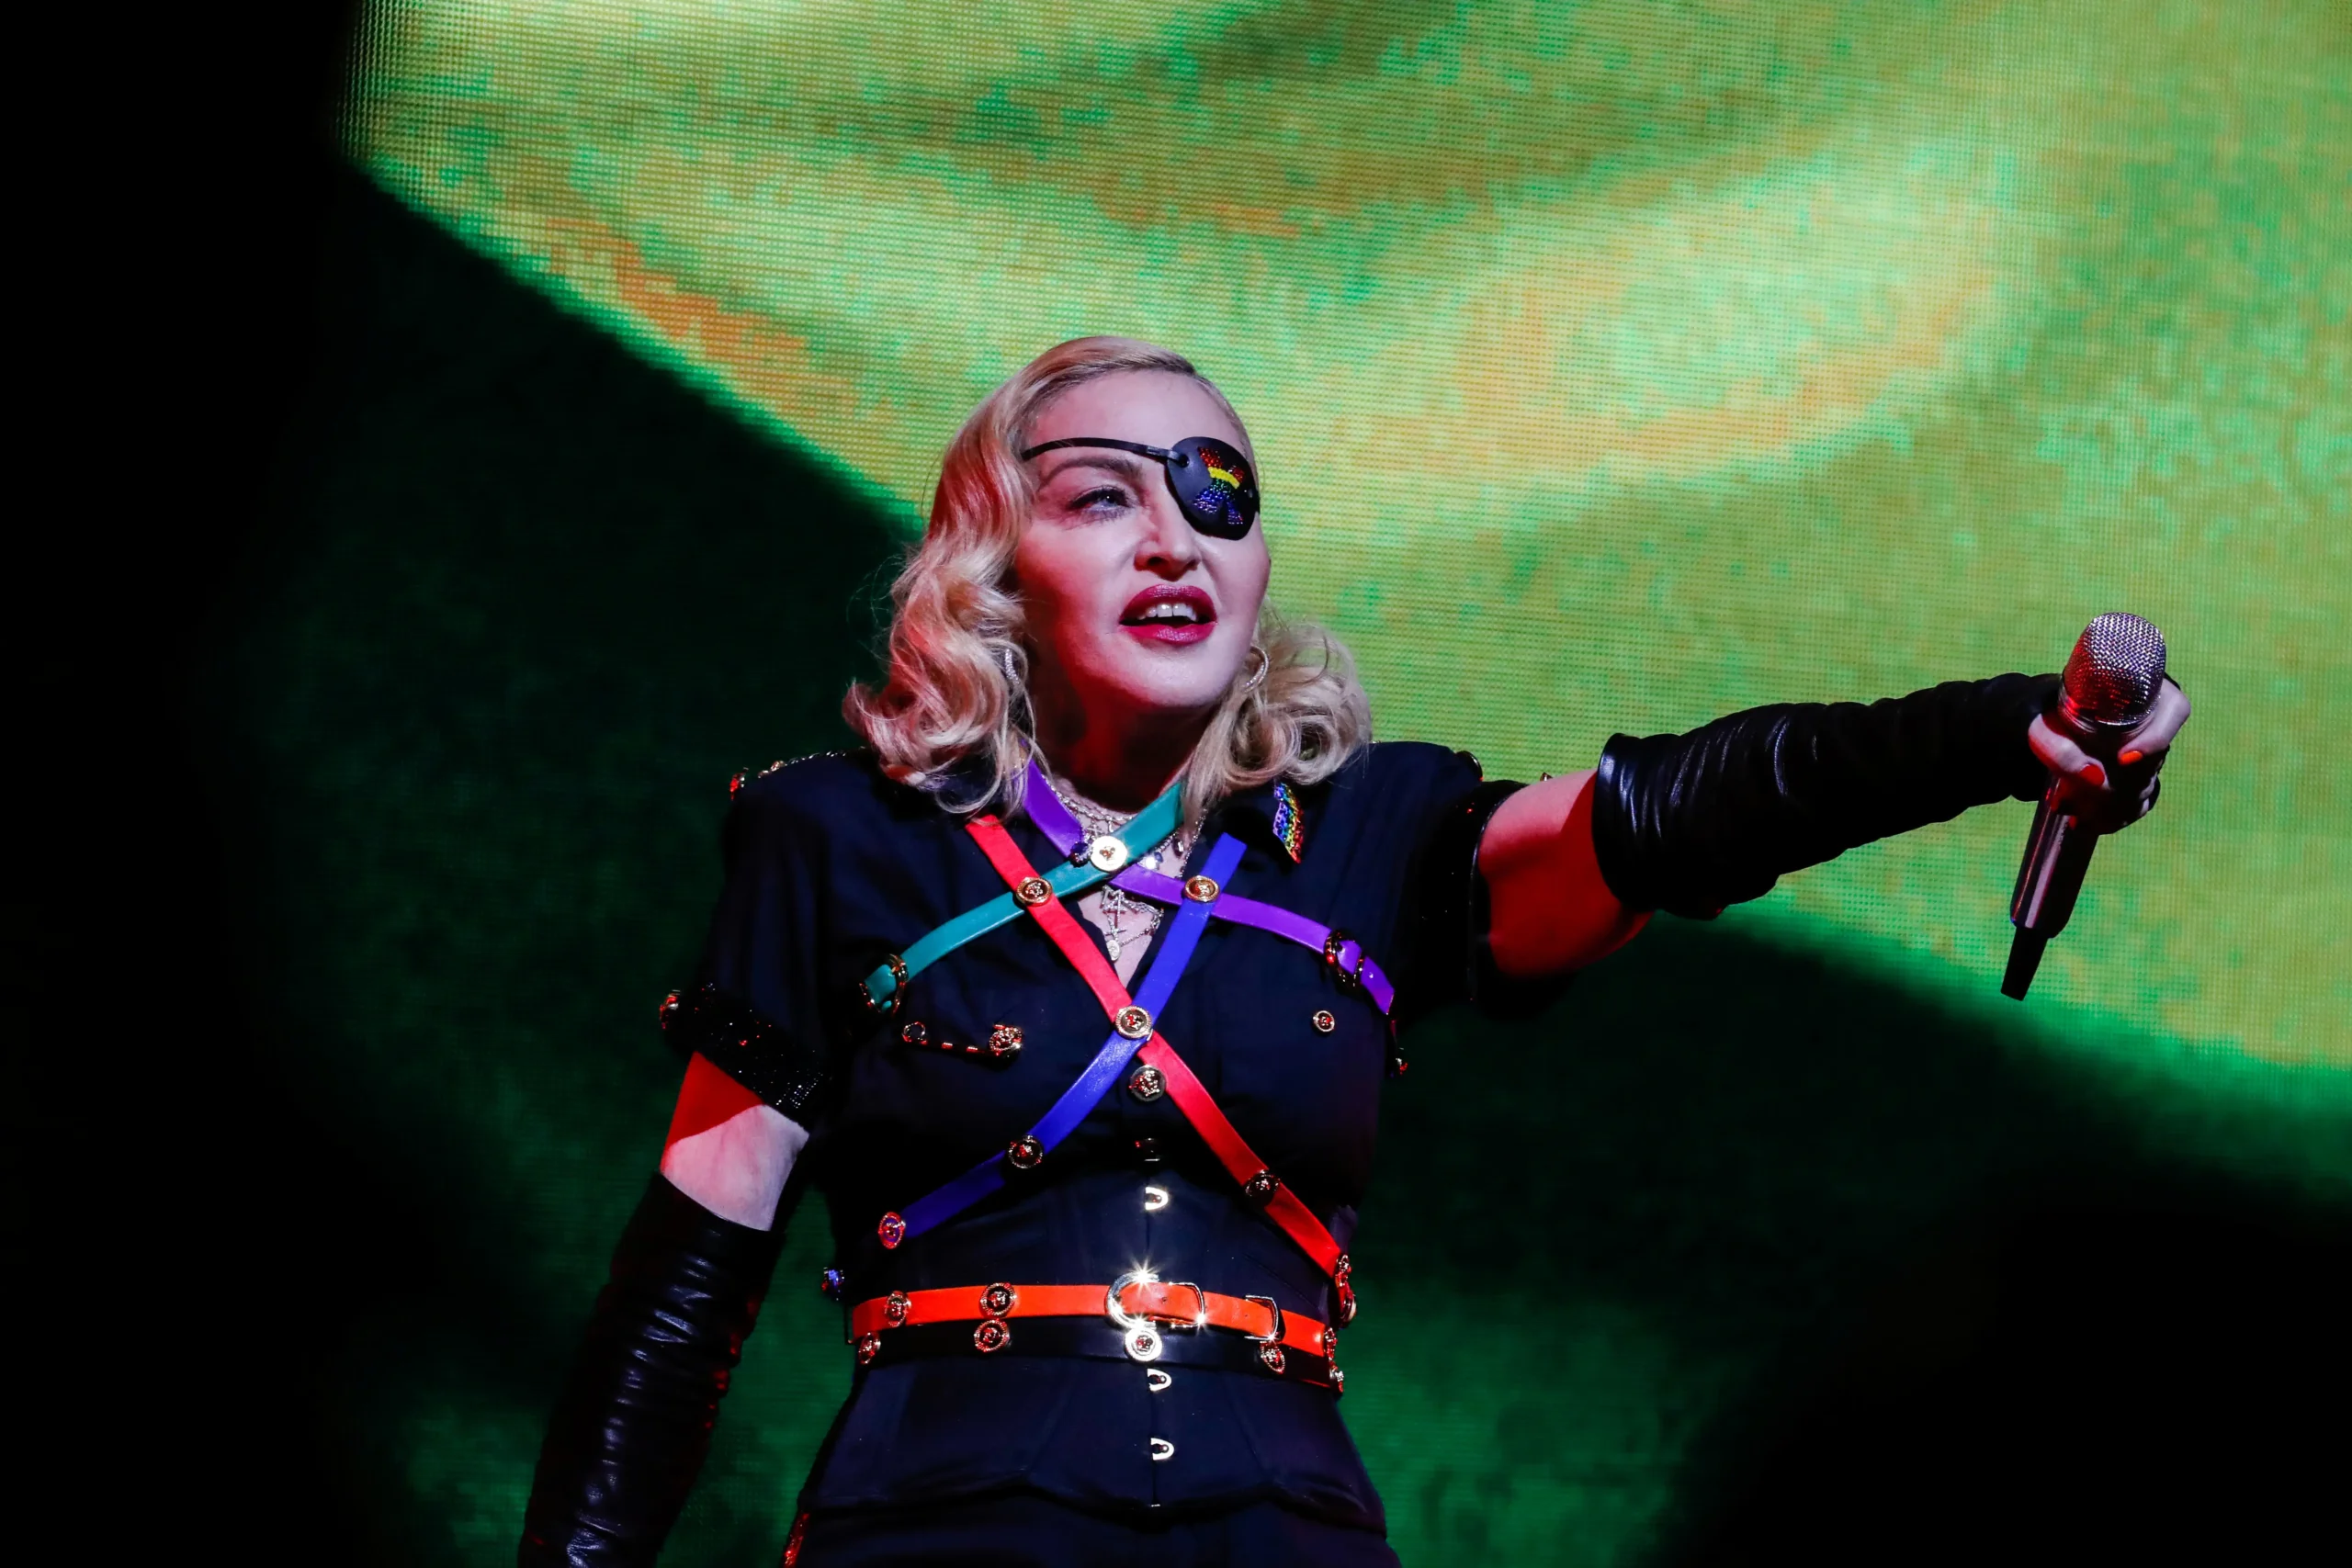 Fortuna de Madonna impressiona Revelado quanto ela ganhou na turne e sua fortuna scaled